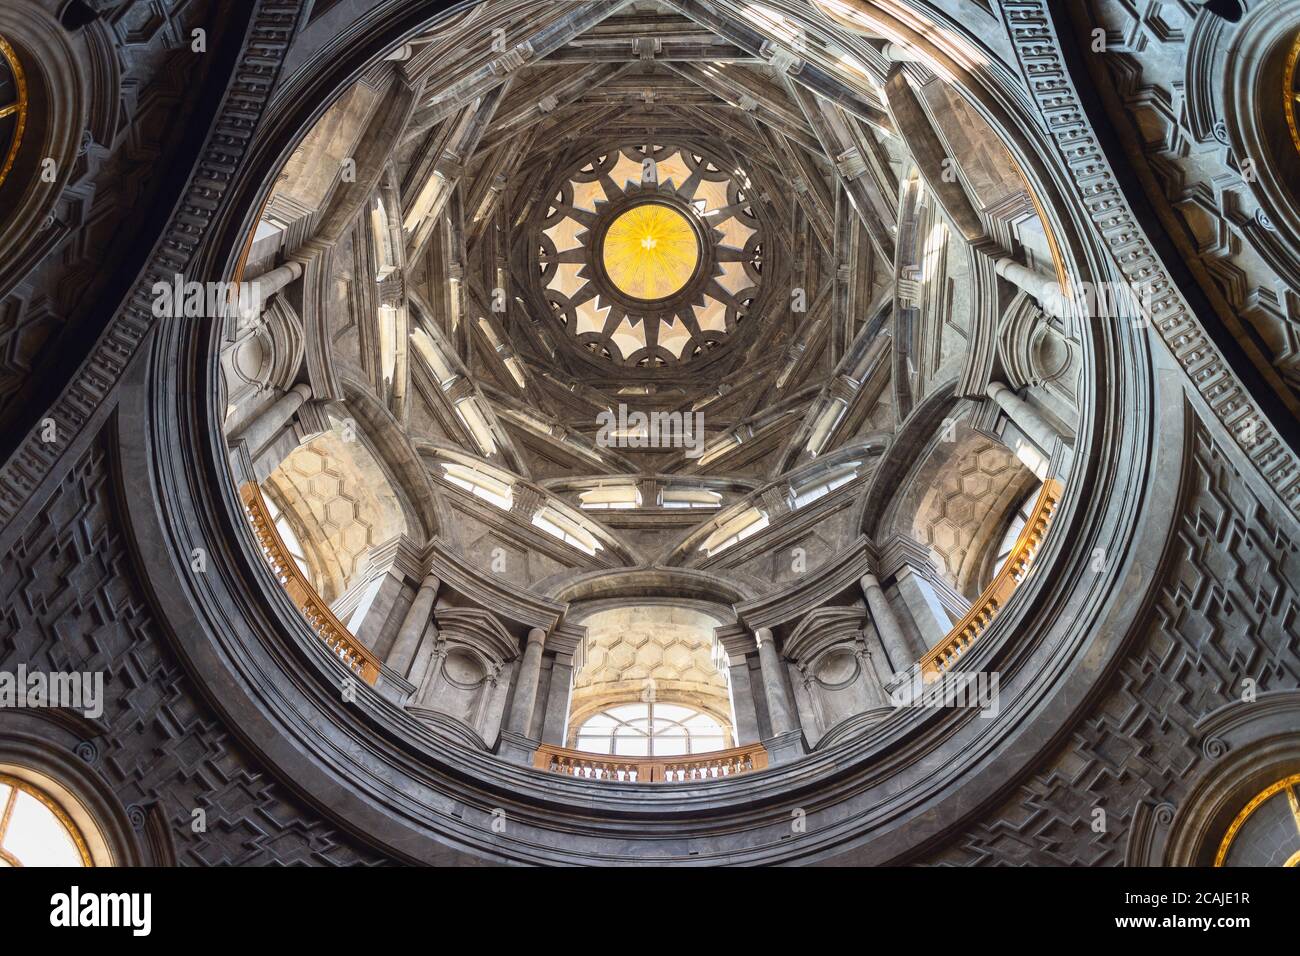 TORINO, ITALIA - 7 MARZO 2019: Veduta della cappella della Santa protezione all'interno della cattedrale di Torino, restaurata nel 2018. Particolare della cupola barocca, capolavoro Foto Stock